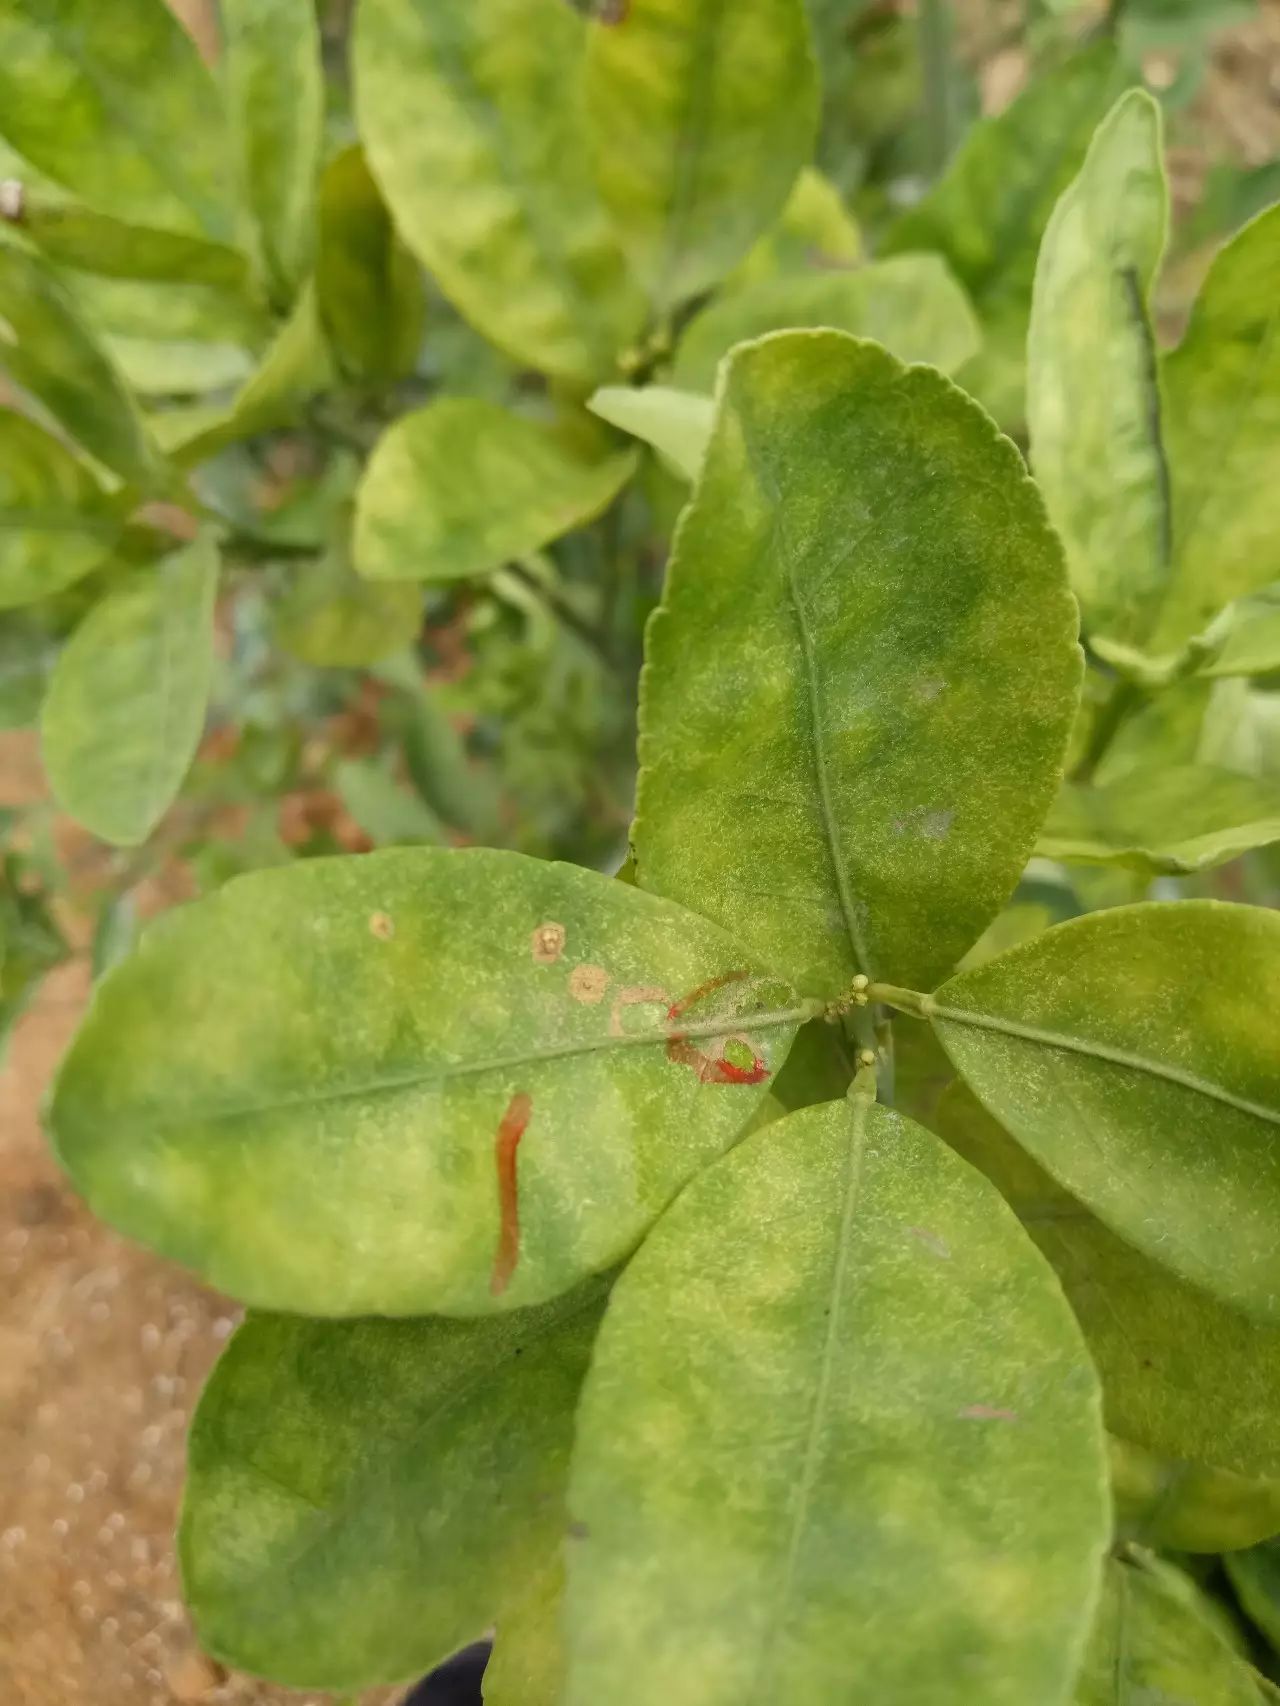 植物上的红蜘蛛图片图片